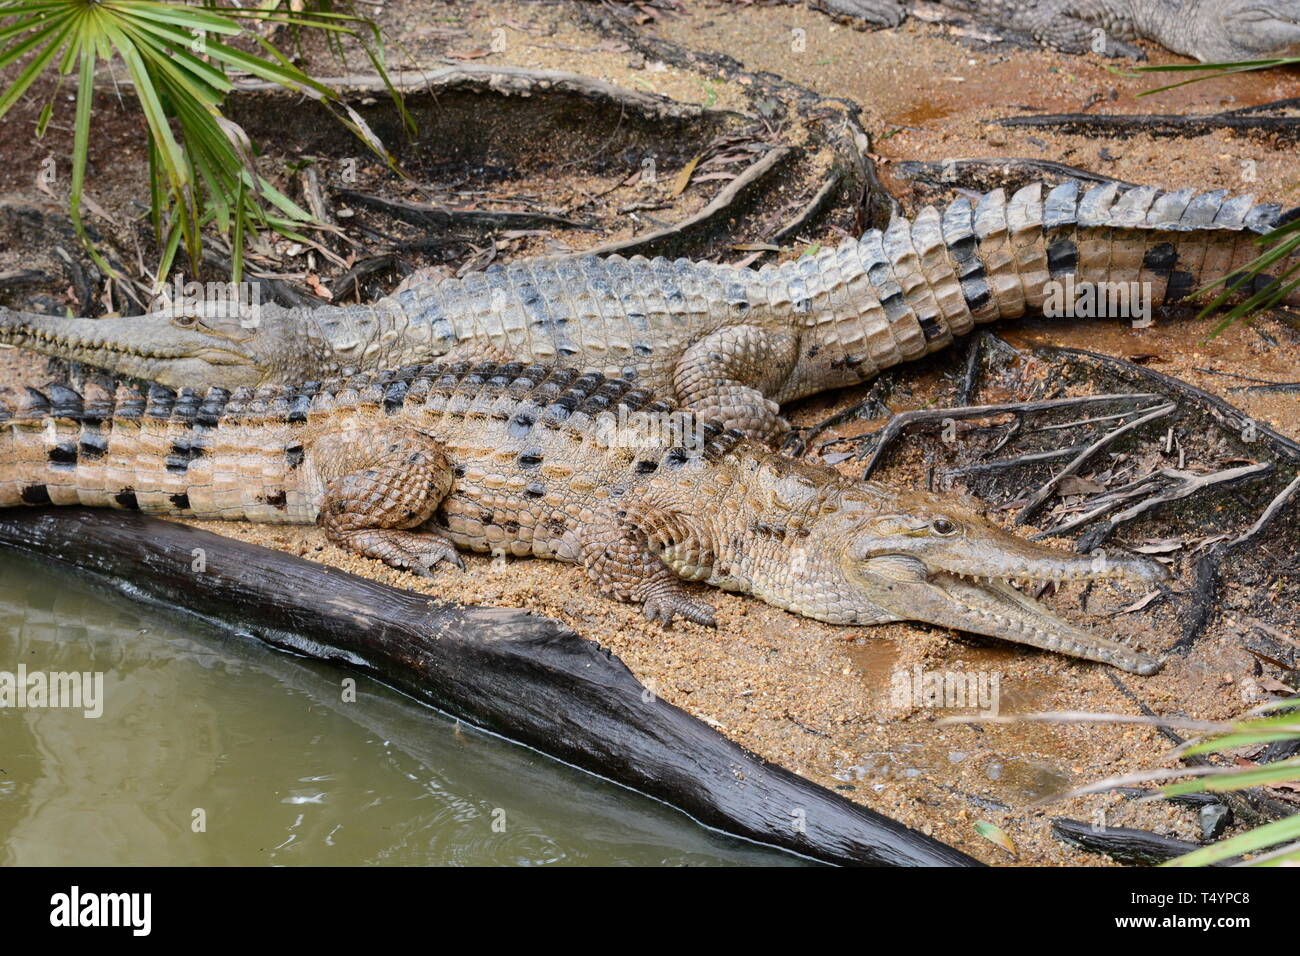 Les crocodiles. Wangetti. Parc national de Daintree. Le Queensland. L'Australie Banque D'Images